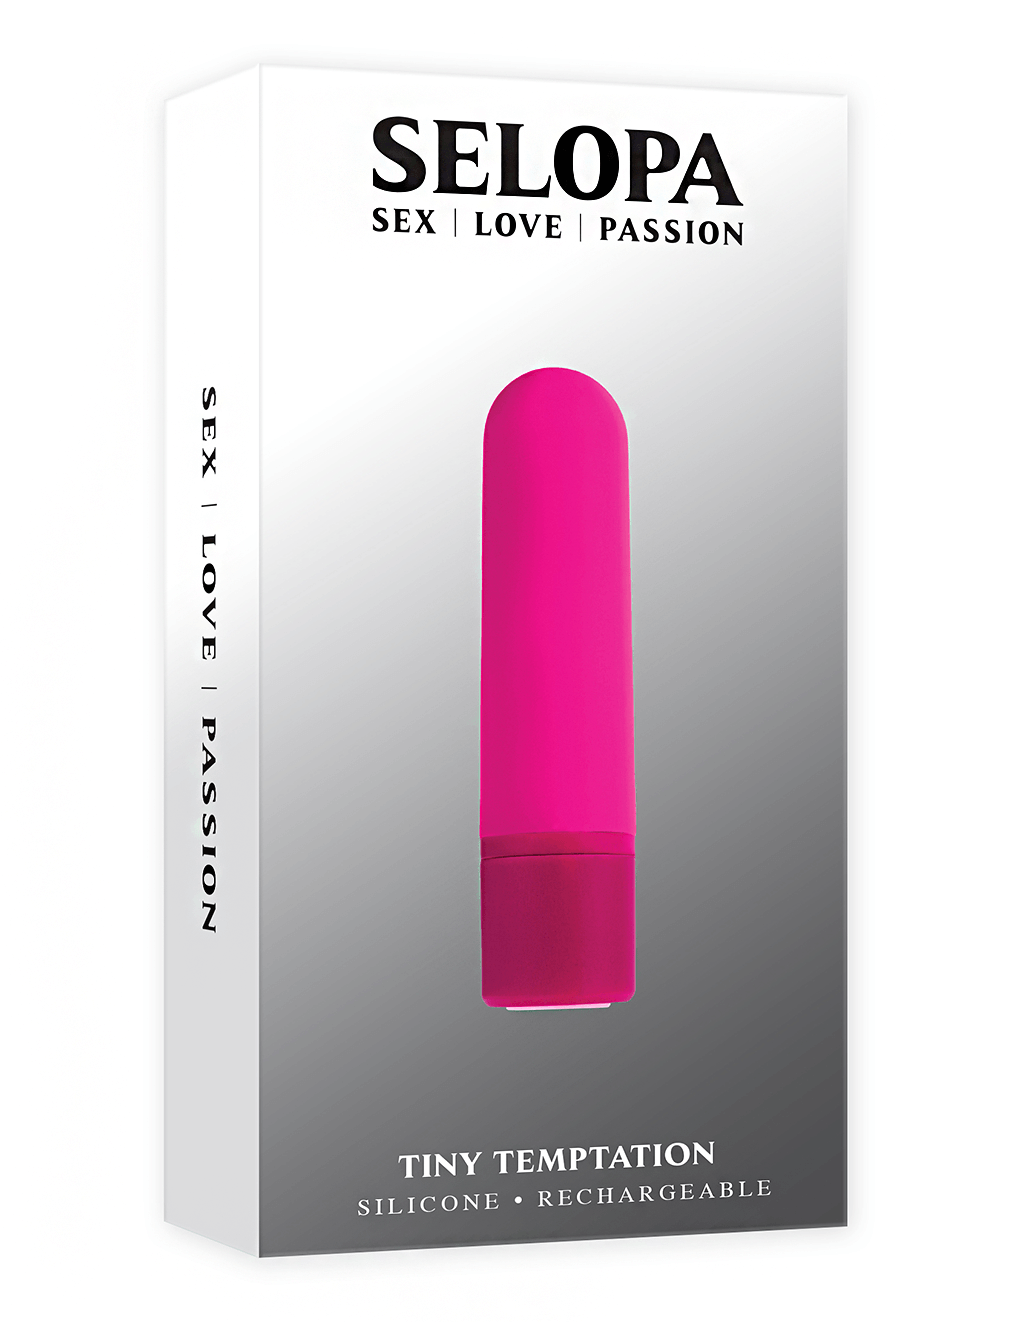 Selopa Tiny Temptation - Box Front